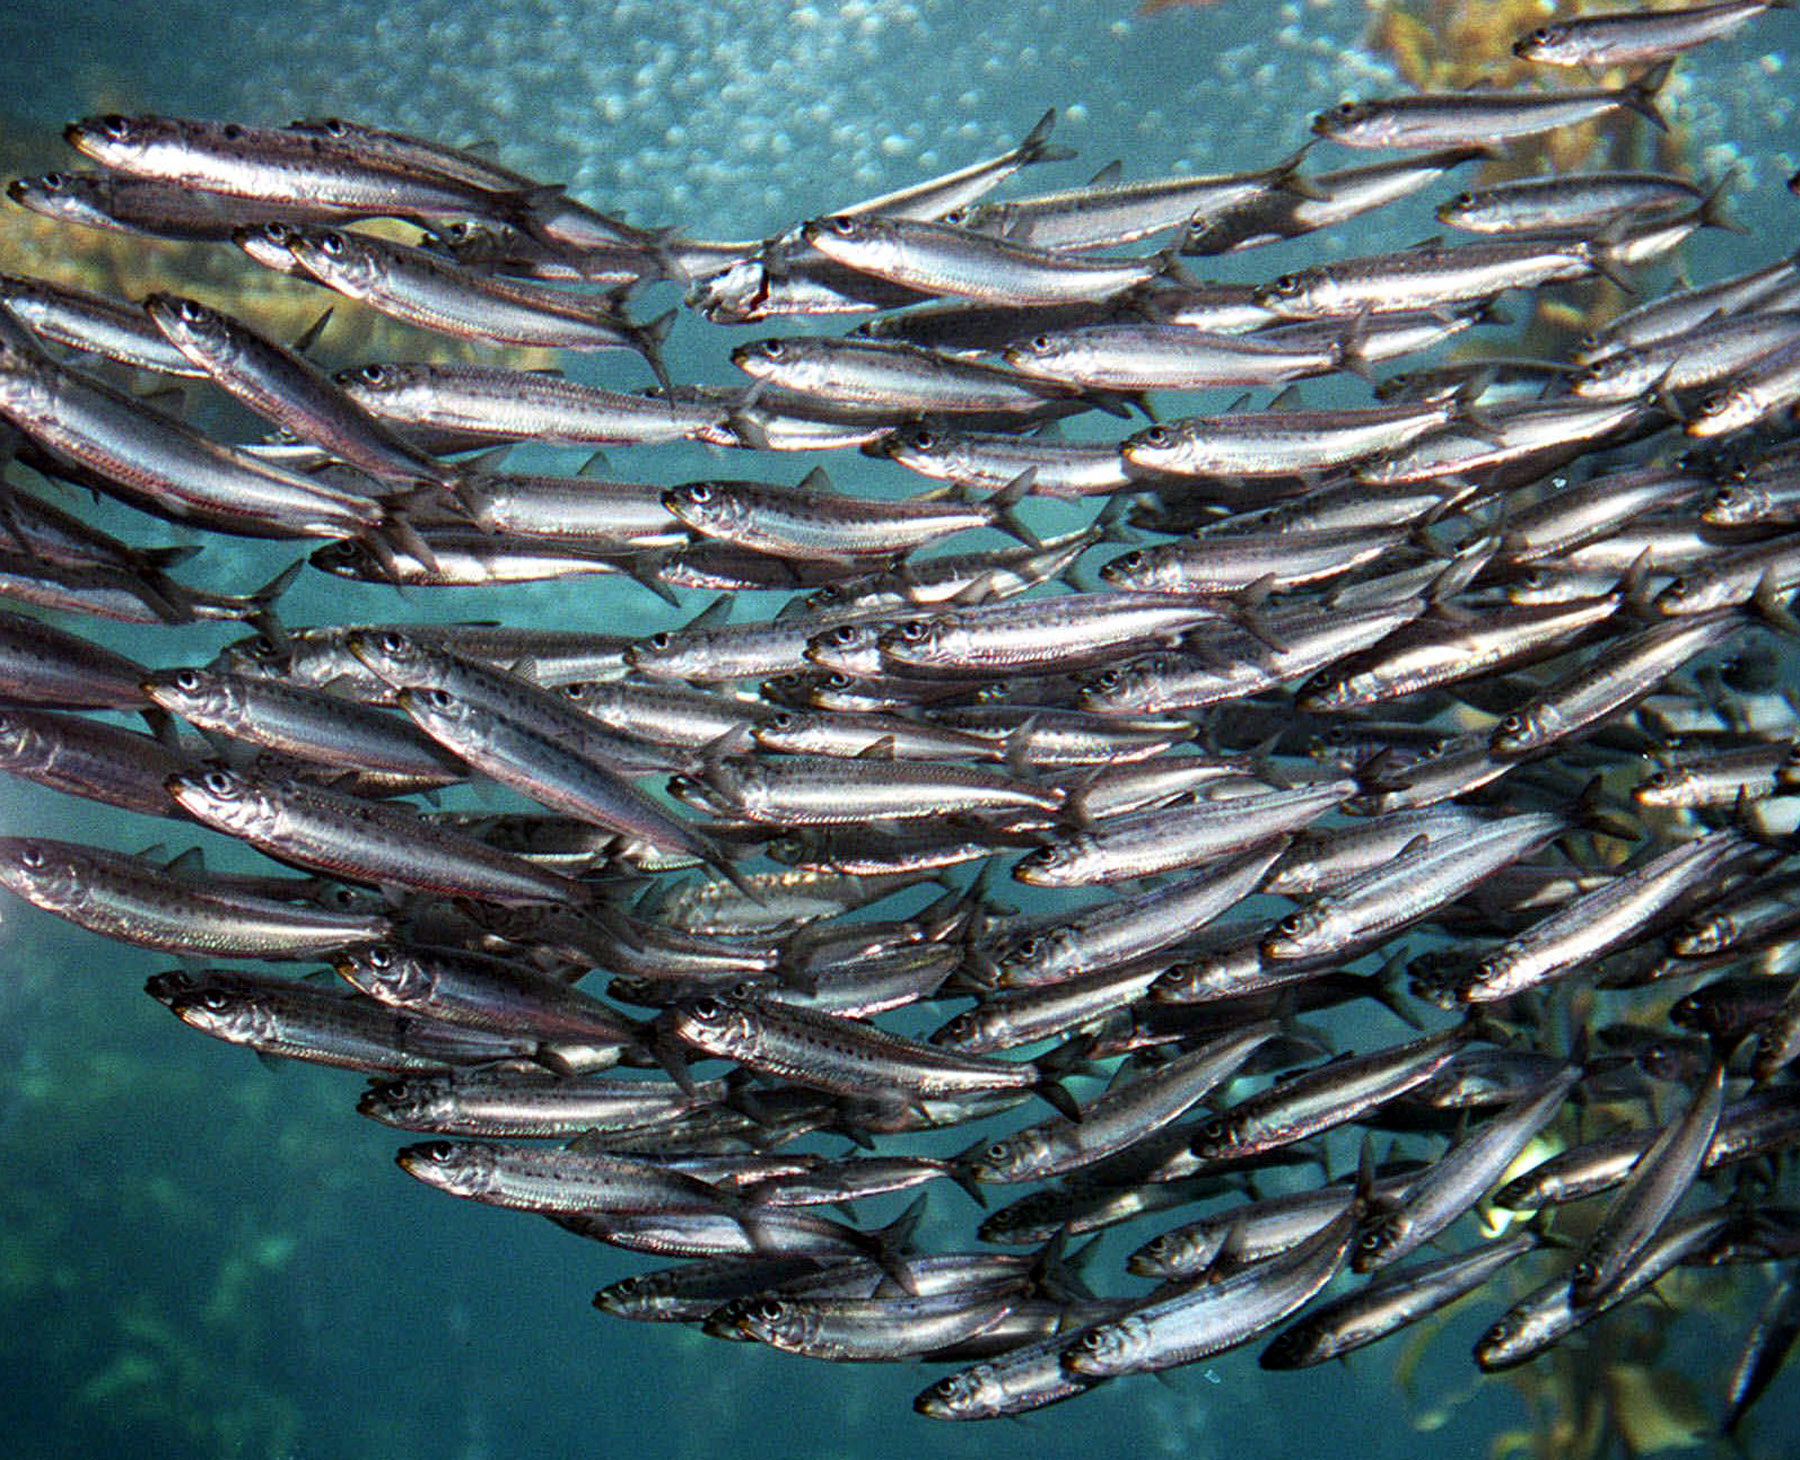 sardines-vs-anchovies-1314903jpg-e6baaaadd71adeea.jpg